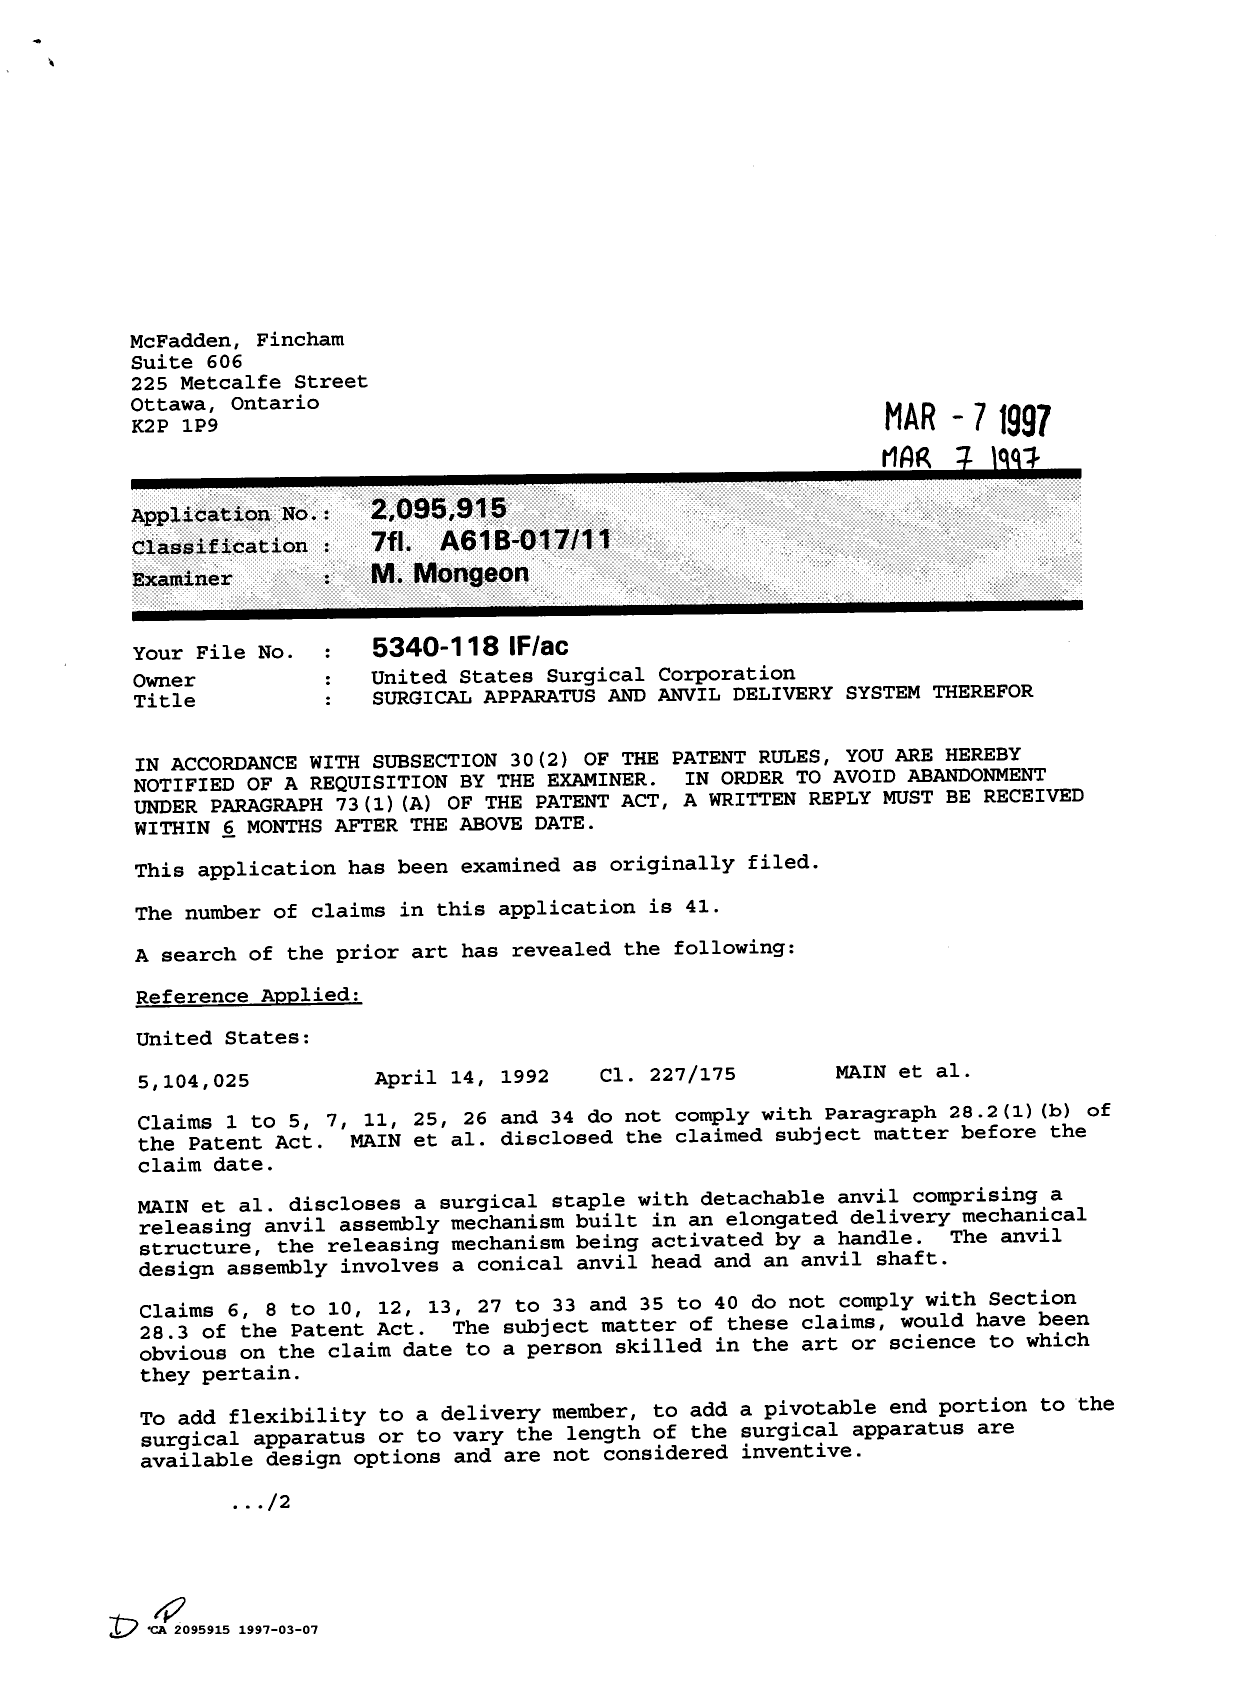 Document de brevet canadien 2095915. Demande d'examen 19970307. Image 1 de 2